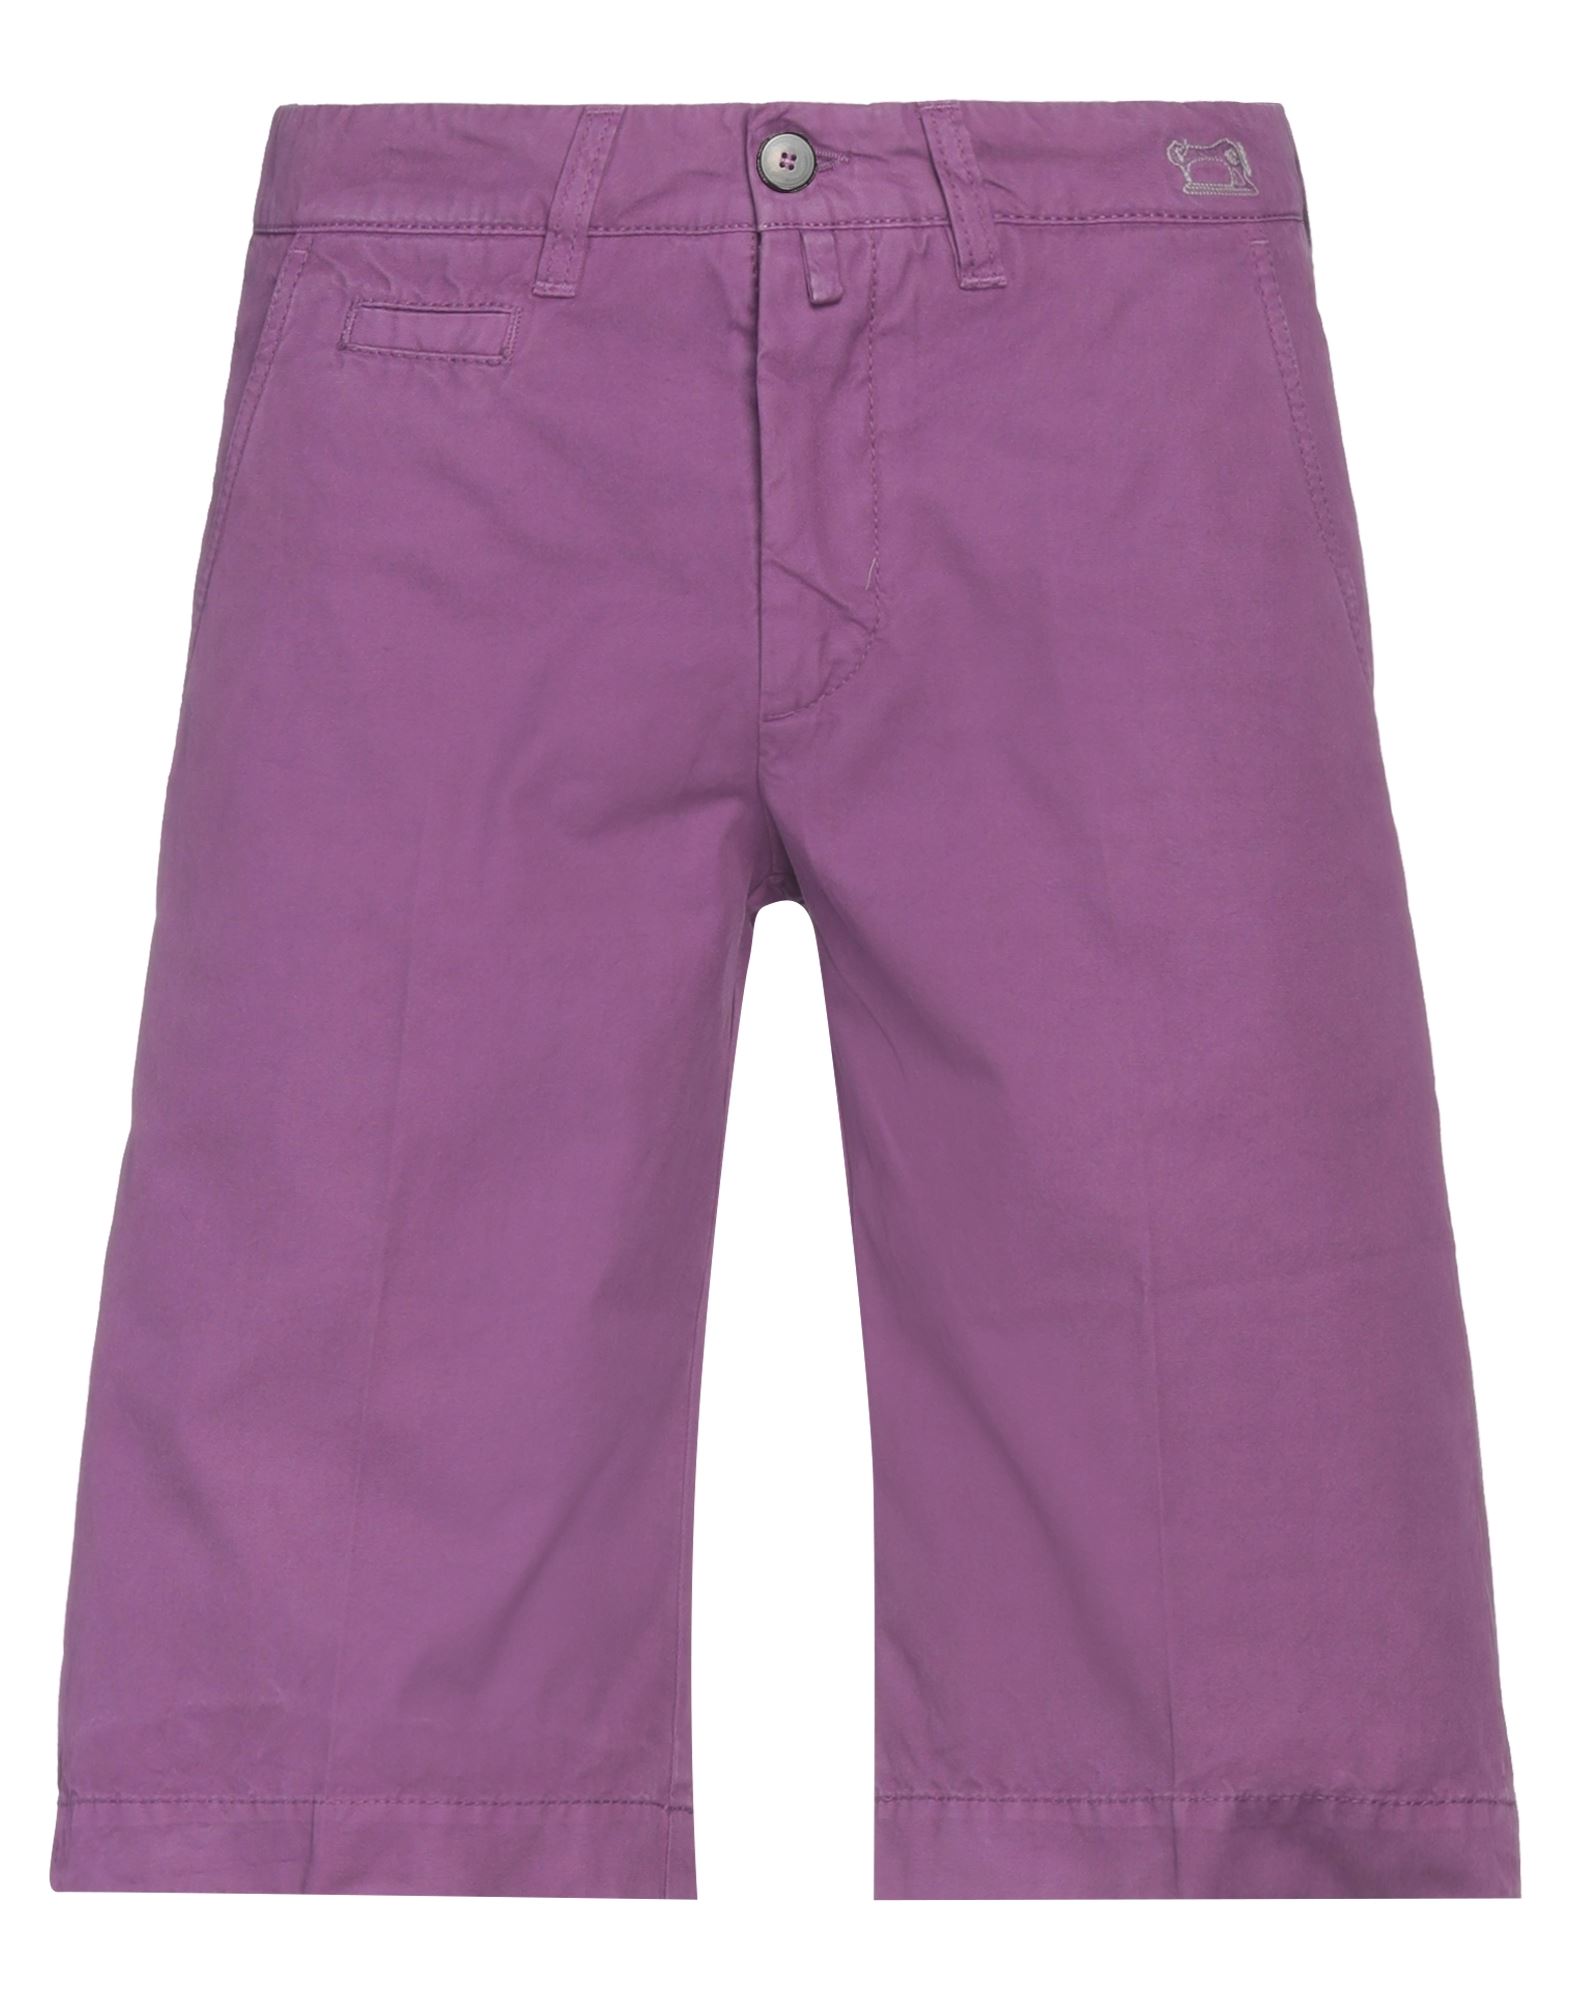 Jacob Cohёn Man Shorts & Bermuda Shorts Mauve Size 37 Cotton In Purple